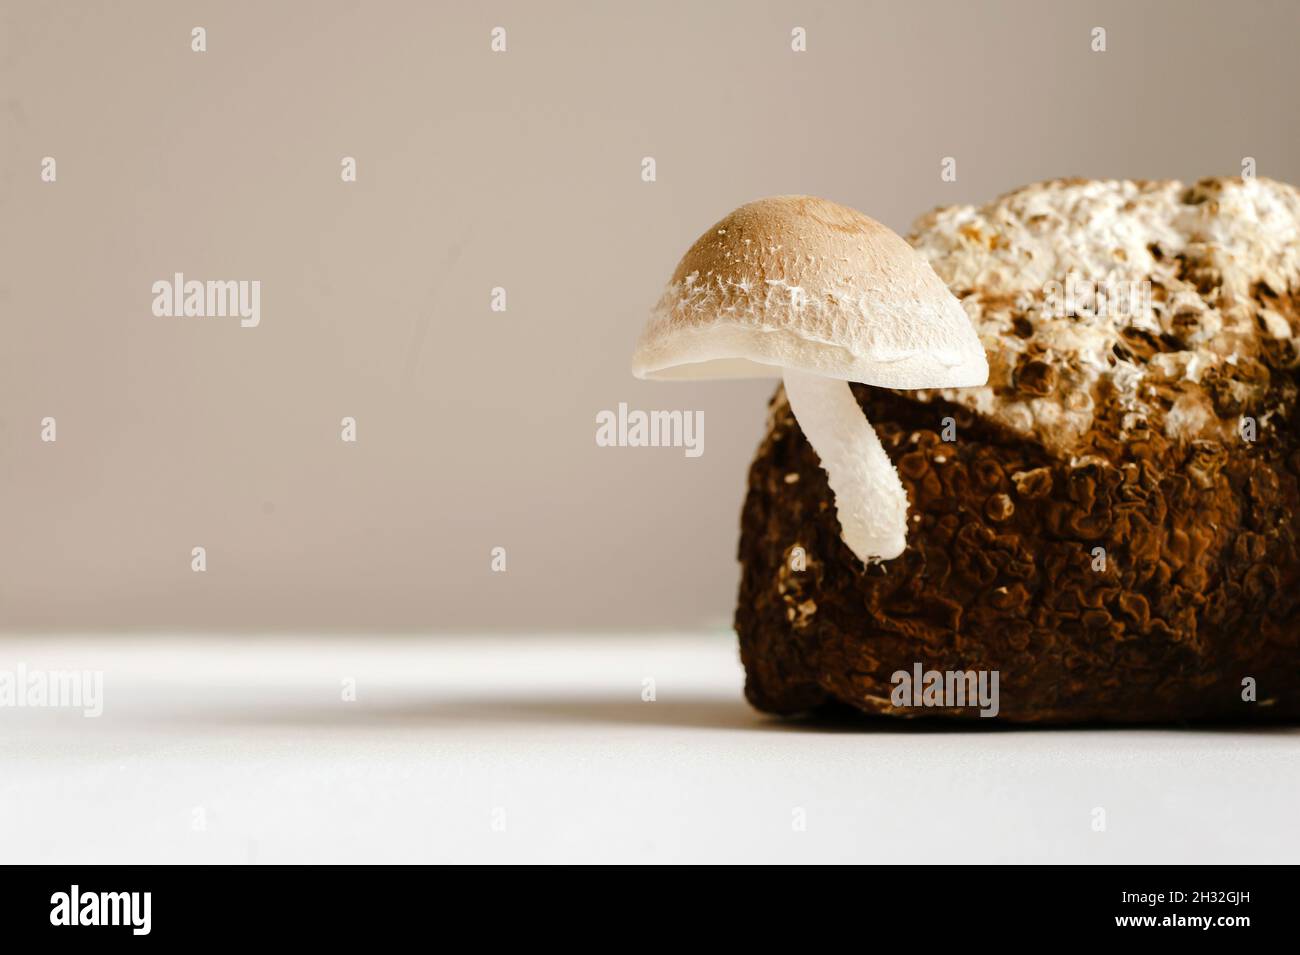 Champignons shiitake sur bloc de mycélium.Champignons asiatiques traditionnels.Aliments biologiques sains.La maison en pleine croissance. Banque D'Images